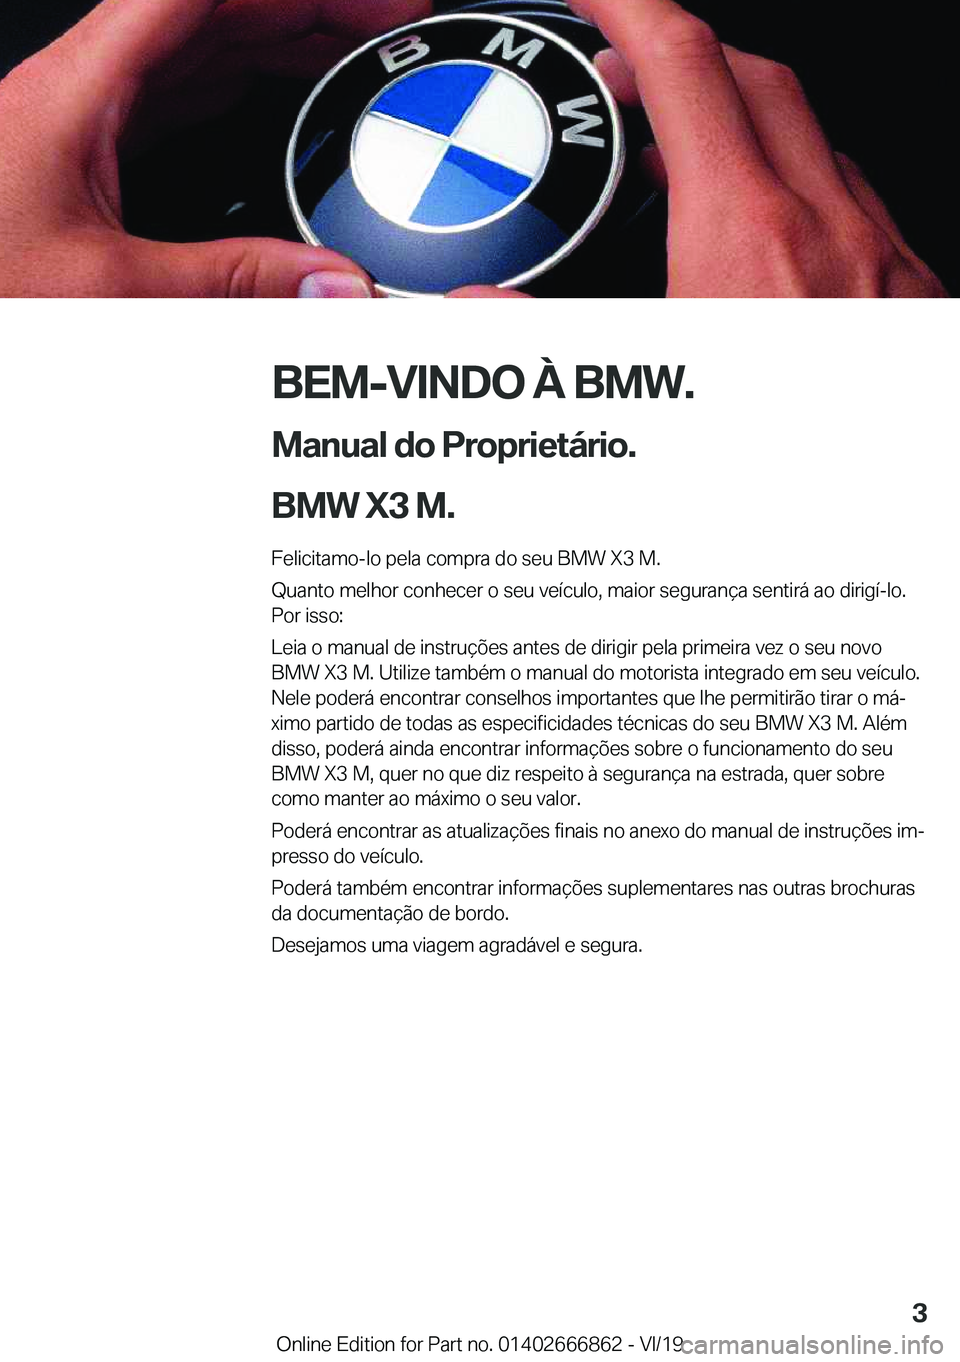 BMW X3 M 2020  Manual do condutor (in Portuguese) �B�E�M�-�V�I�N�D�O��À��B�M�W�.
�M�a�n�u�a�l��d�o��P�r�o�p�r�i�e�t�á�r�i�o�.
�B�M�W��X�3��M�. �F�e�l�i�c�i�t�a�m�o�-�l�o��p�e�l�a��c�o�m�p�r�a��d�o��s�e�u��B�M�W��X�3��M�.
�Q�u�a�n�t�o�